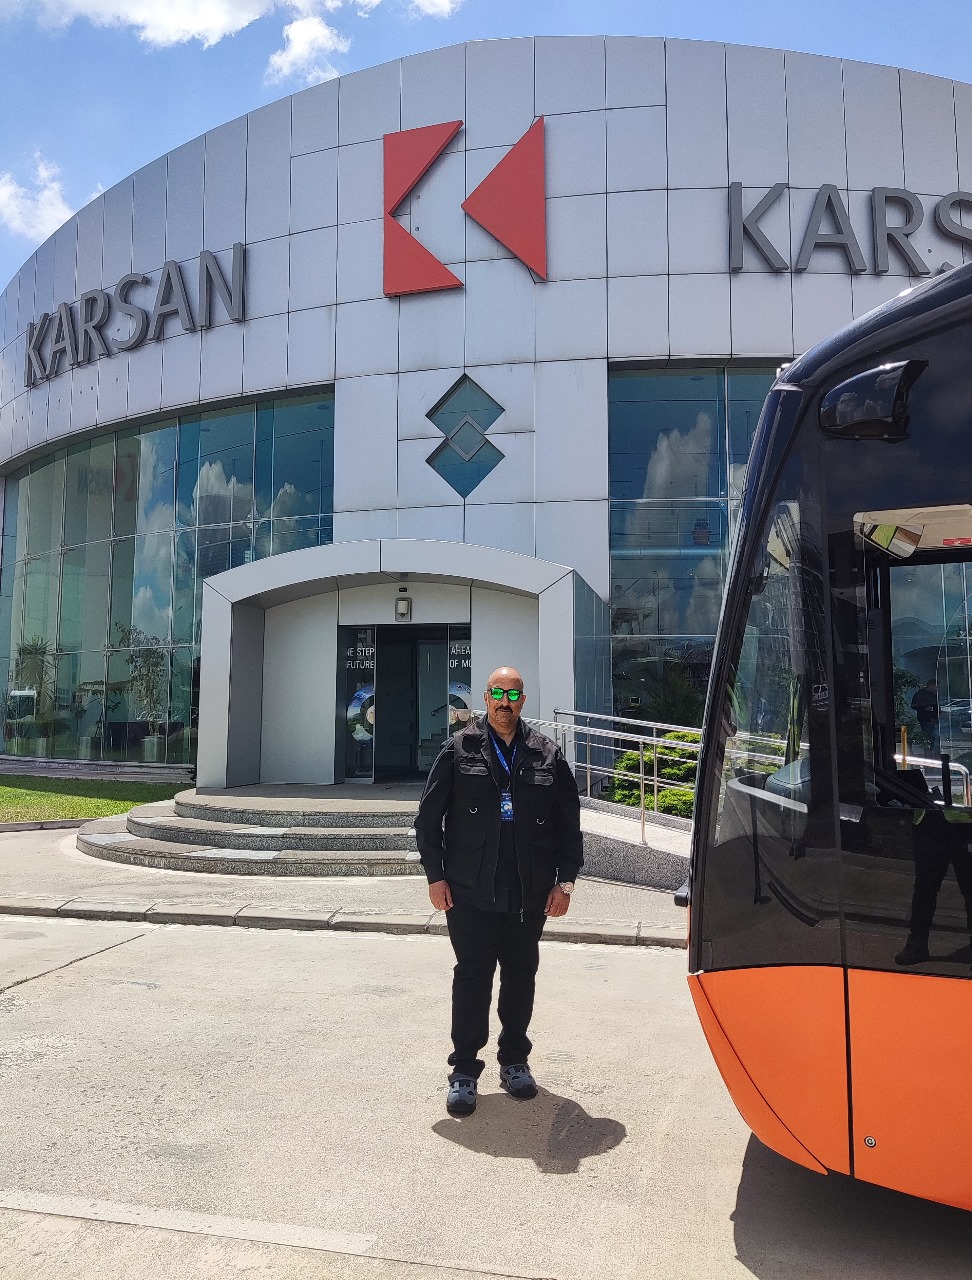 زيارة سريعة لمصنع (كارسان – KARSAN) للباصات   الإهتمام بالمستقبل الكهربائى للباصات